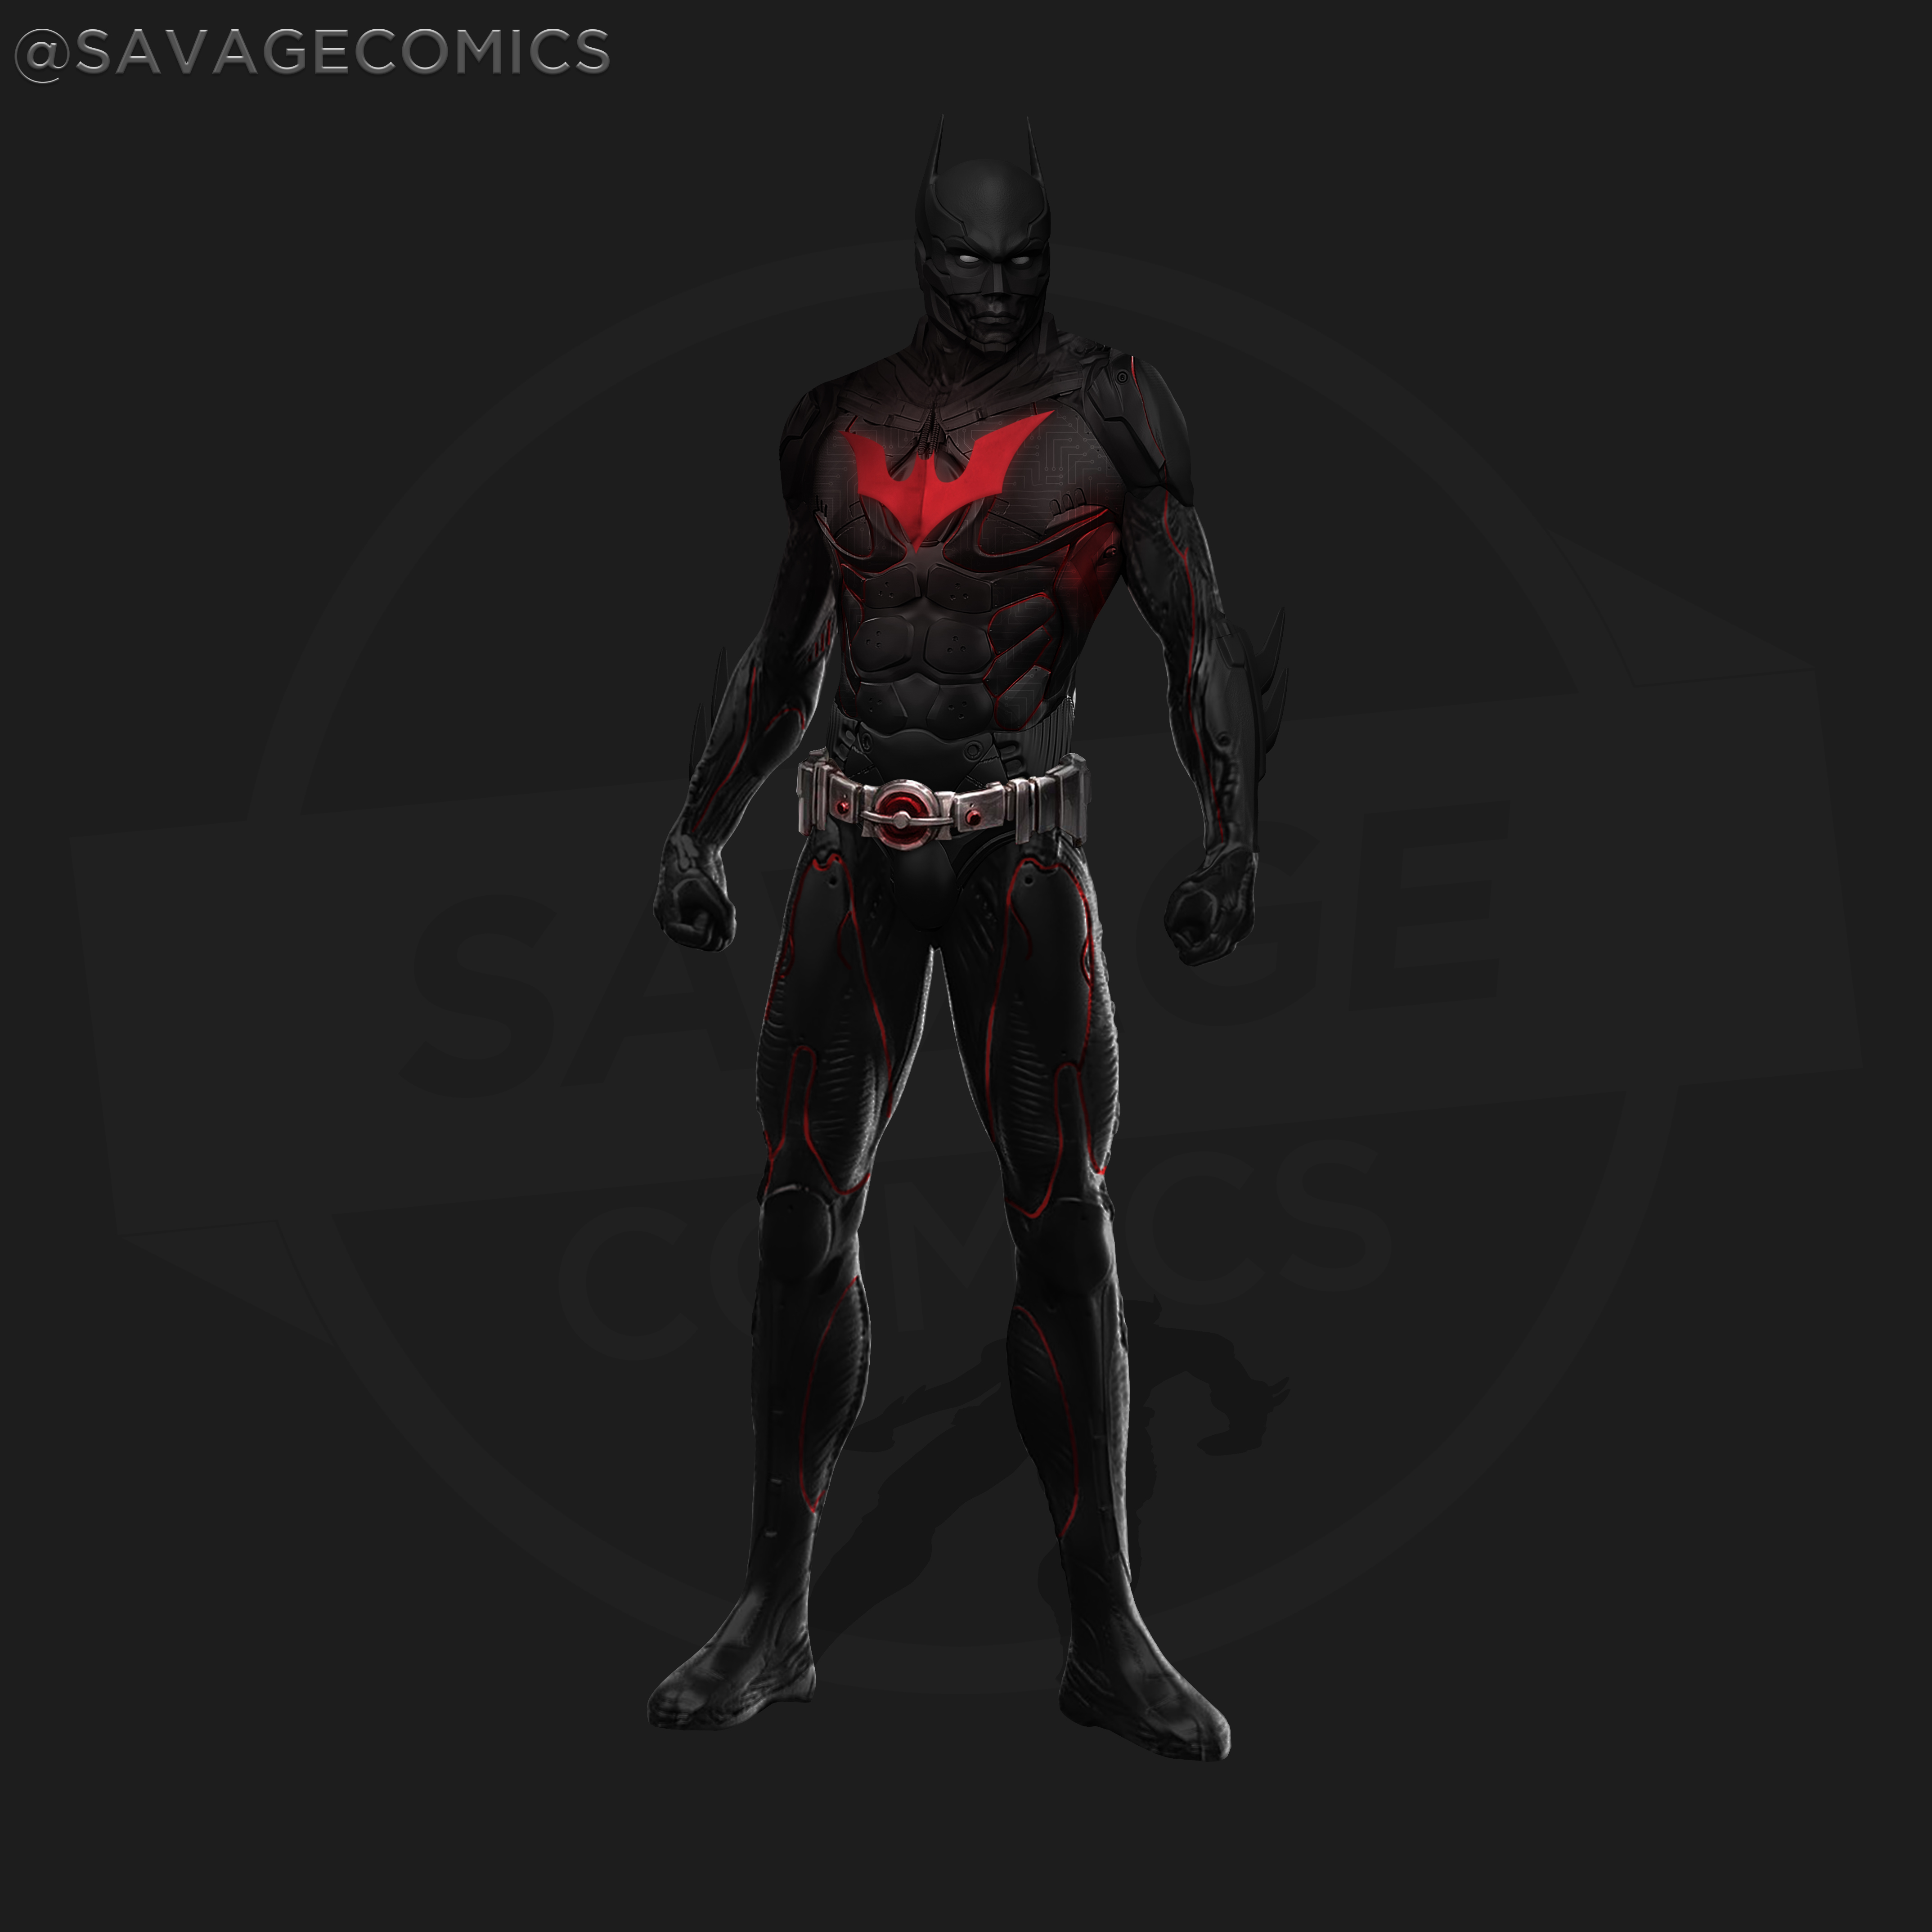 Dceu Batman Beyond - Concept Art by SavageComics on DeviantArt